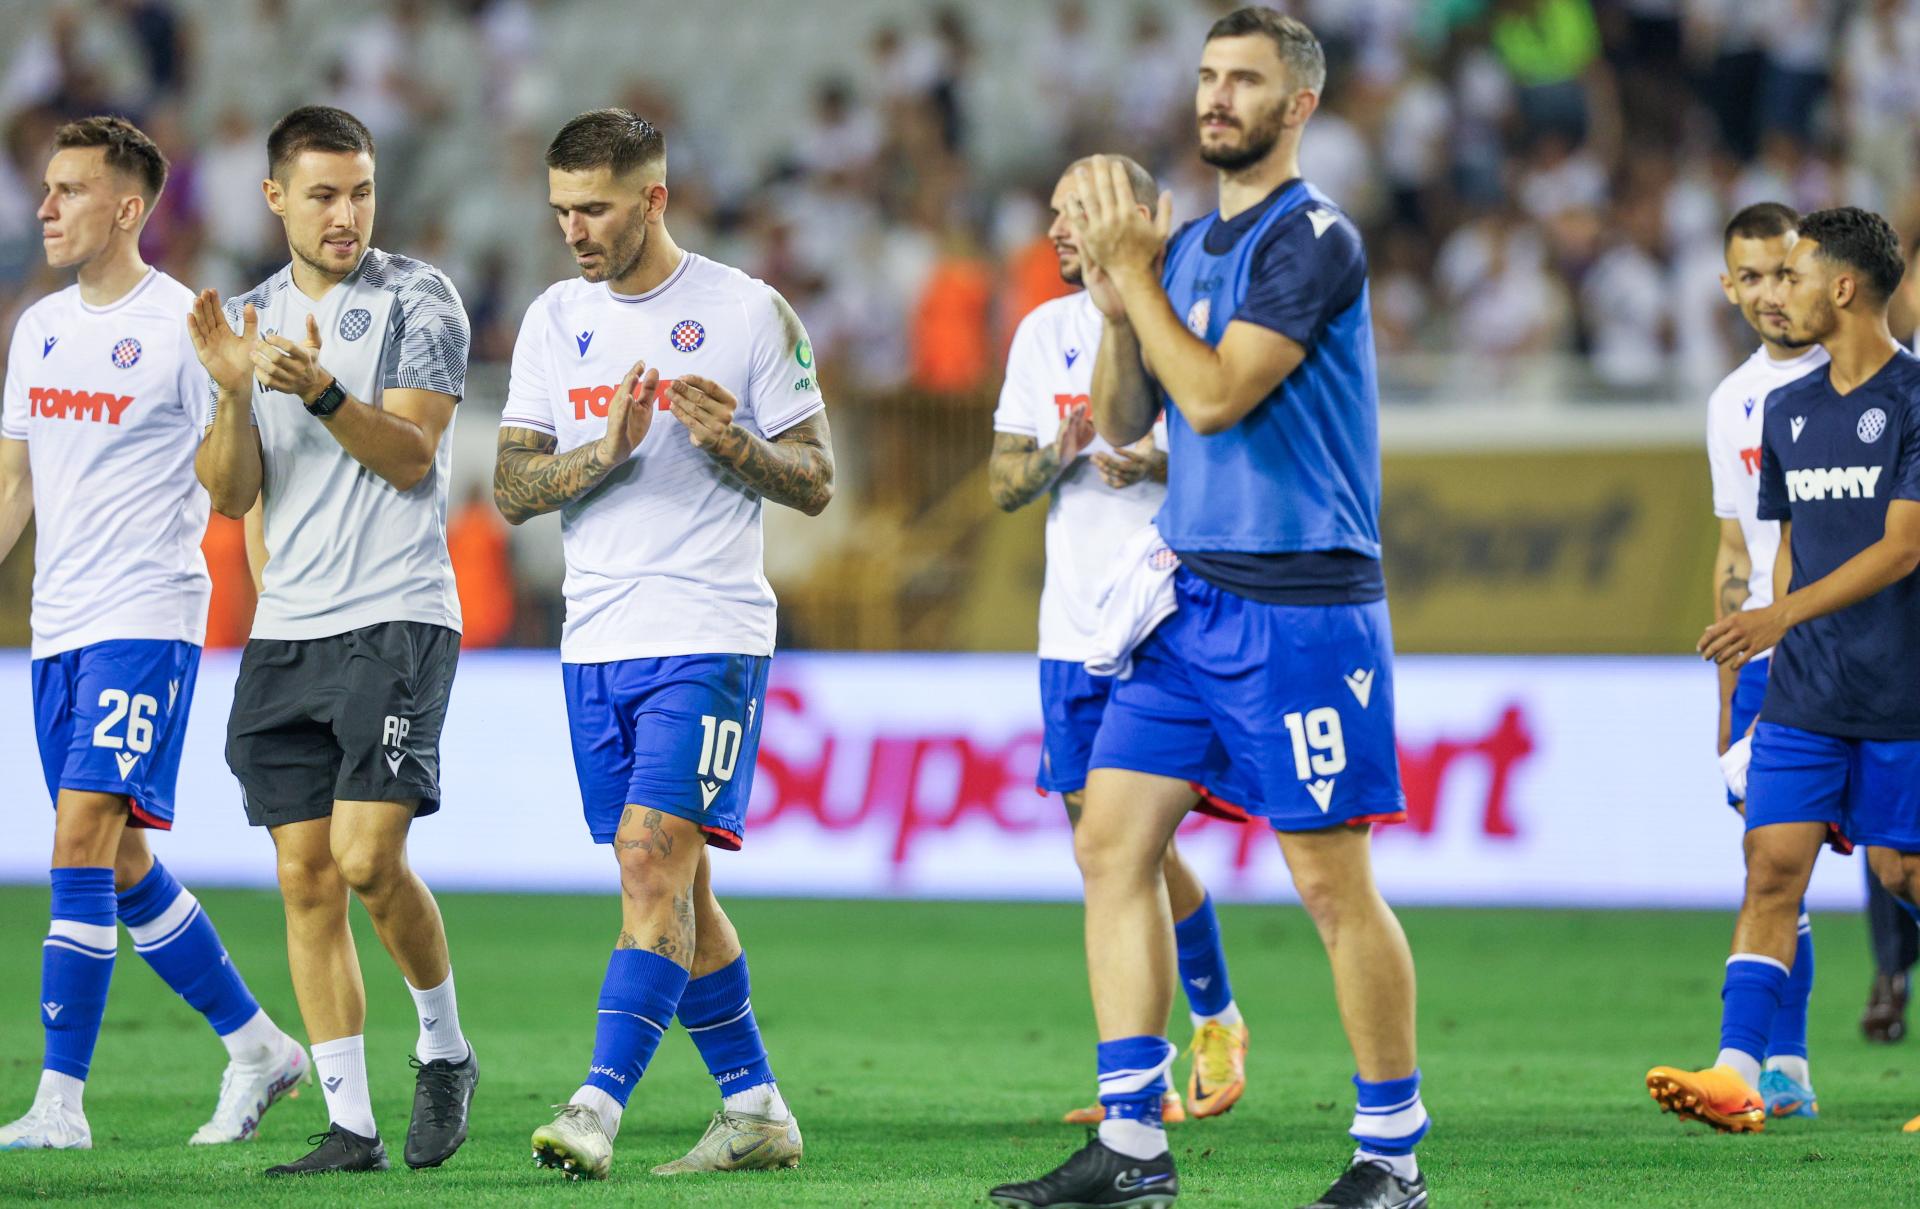 NOGOMET UŽIVO: Hajduk i PAOK na Poljudu igraju prvu utakmicu 3. pretkola  Konferencijske lige u četvrtak, 10. kolovoza 2023. godine - gdje gledati  prijenos?